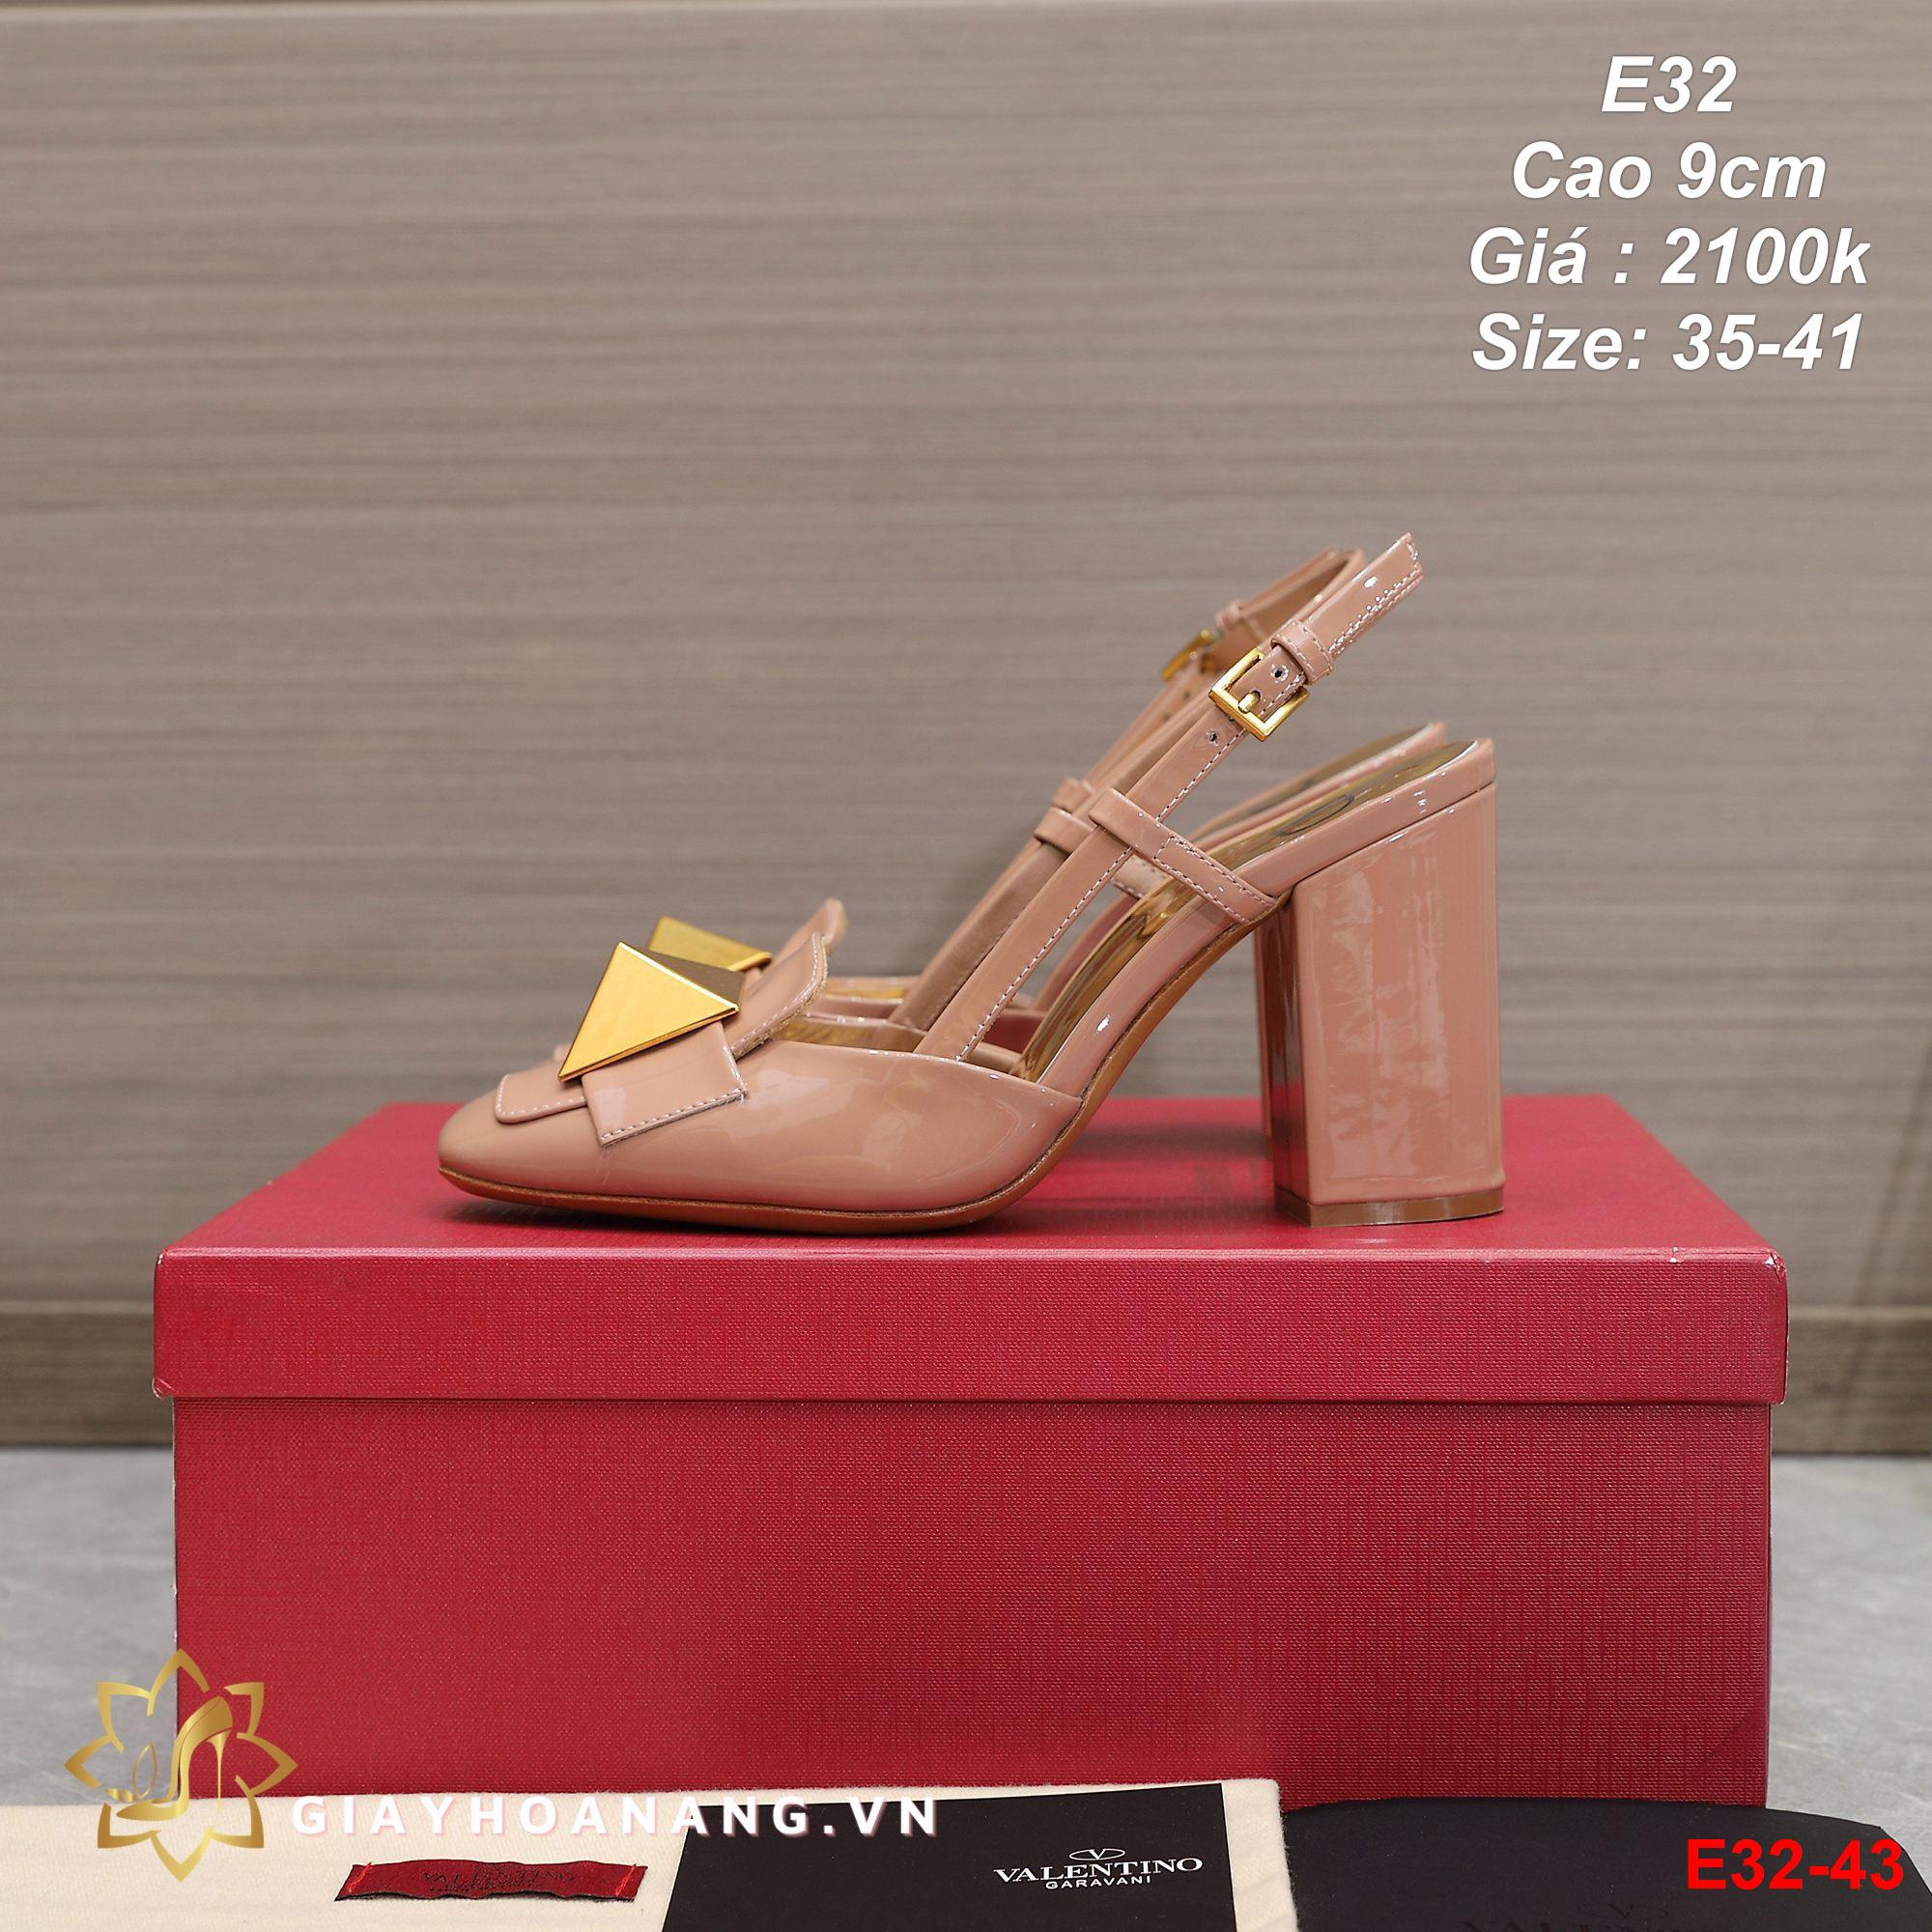 E32-43 Valentino sandal cao 9cm siêu cấp